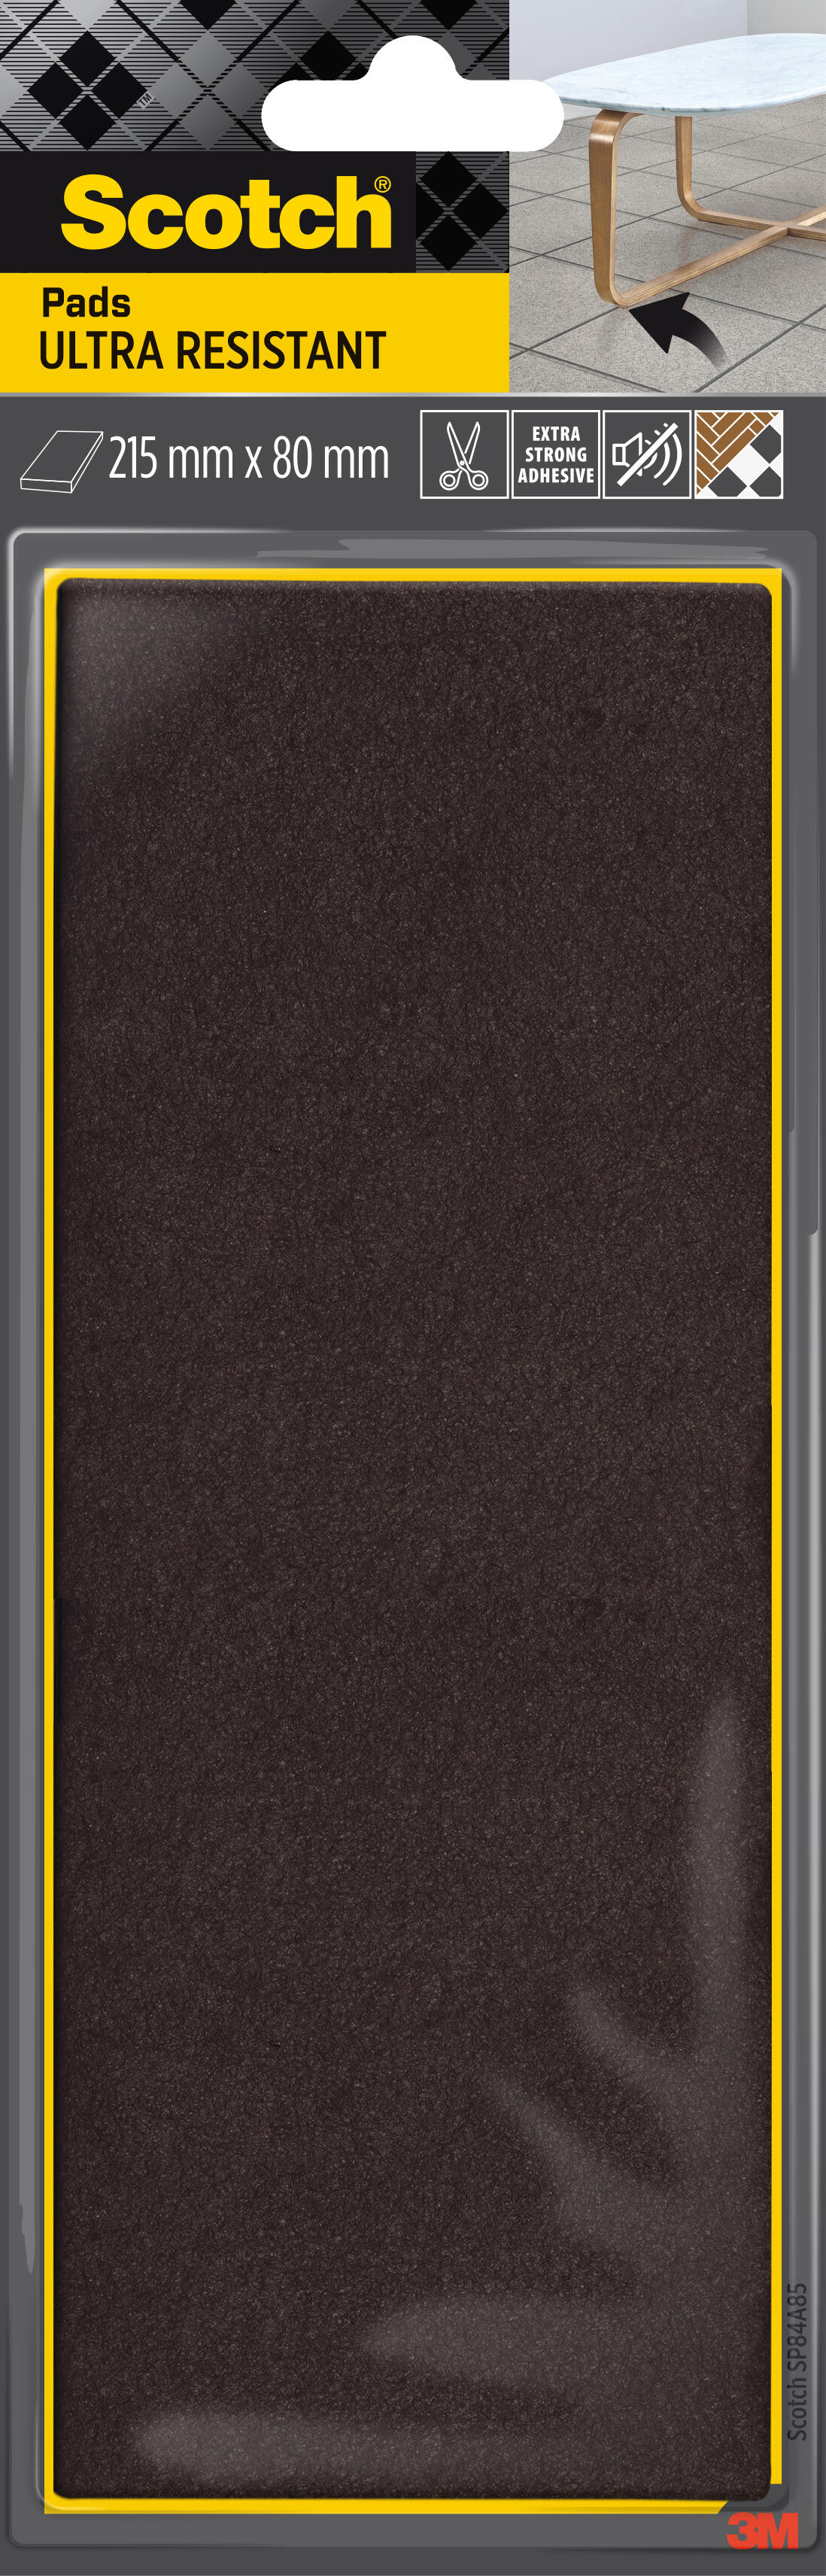 Plaque feutre en laine adhésif à découper, SCOTCH, 215 x 80 mm, beige